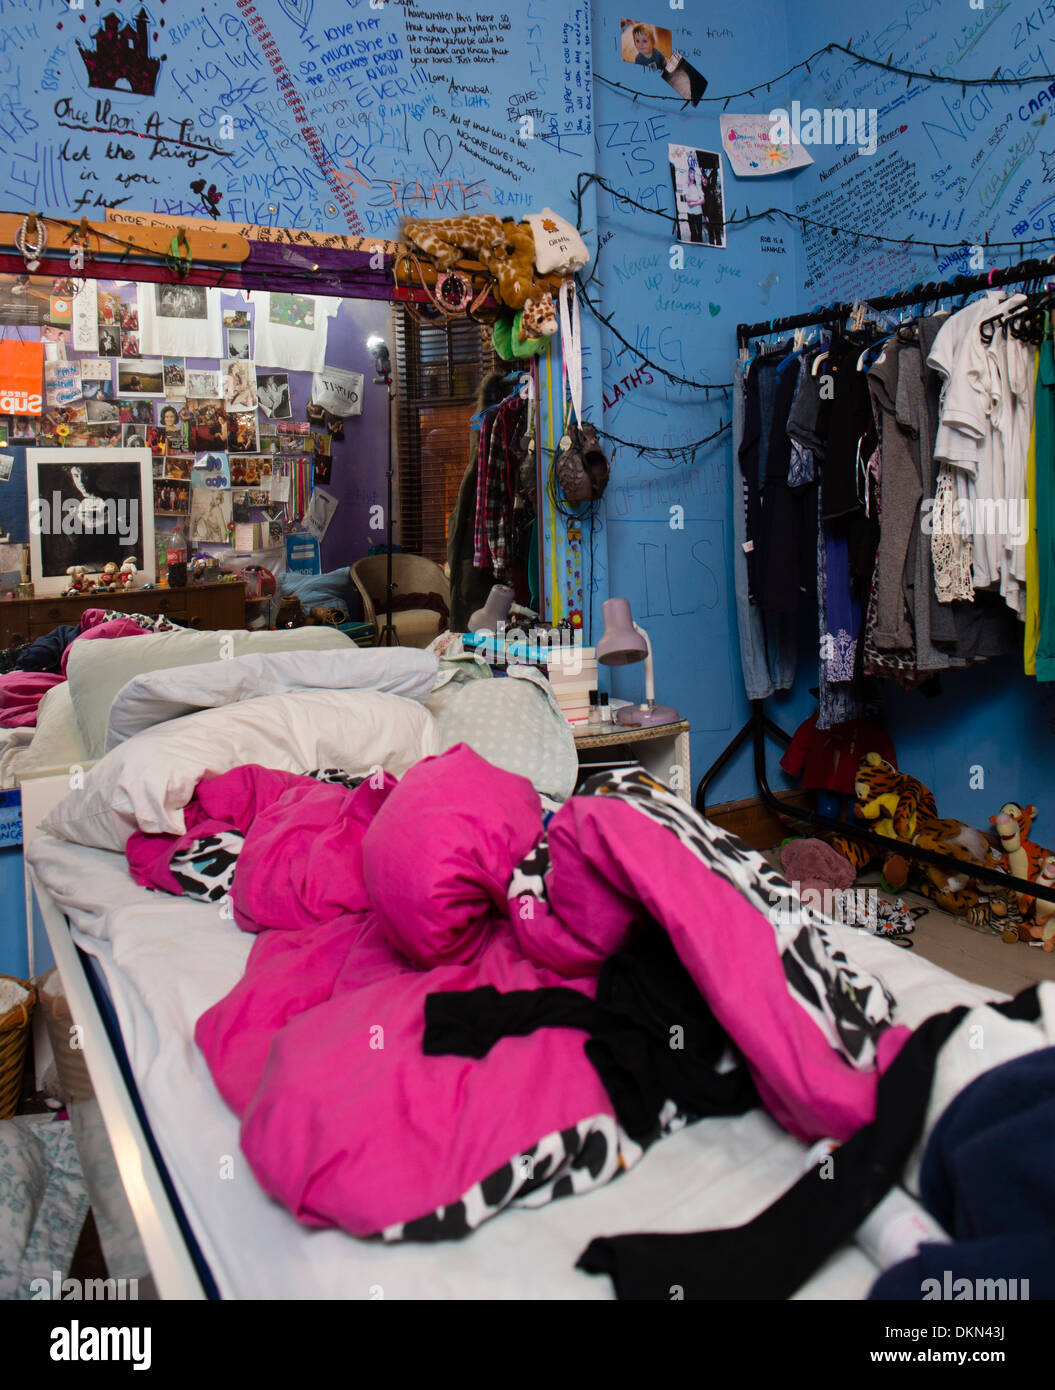 Una adolescente es complicado desordenado dormitorio, con el reconocimiento de escritura a mano por todas las paredes, REINO UNIDO Foto de stock